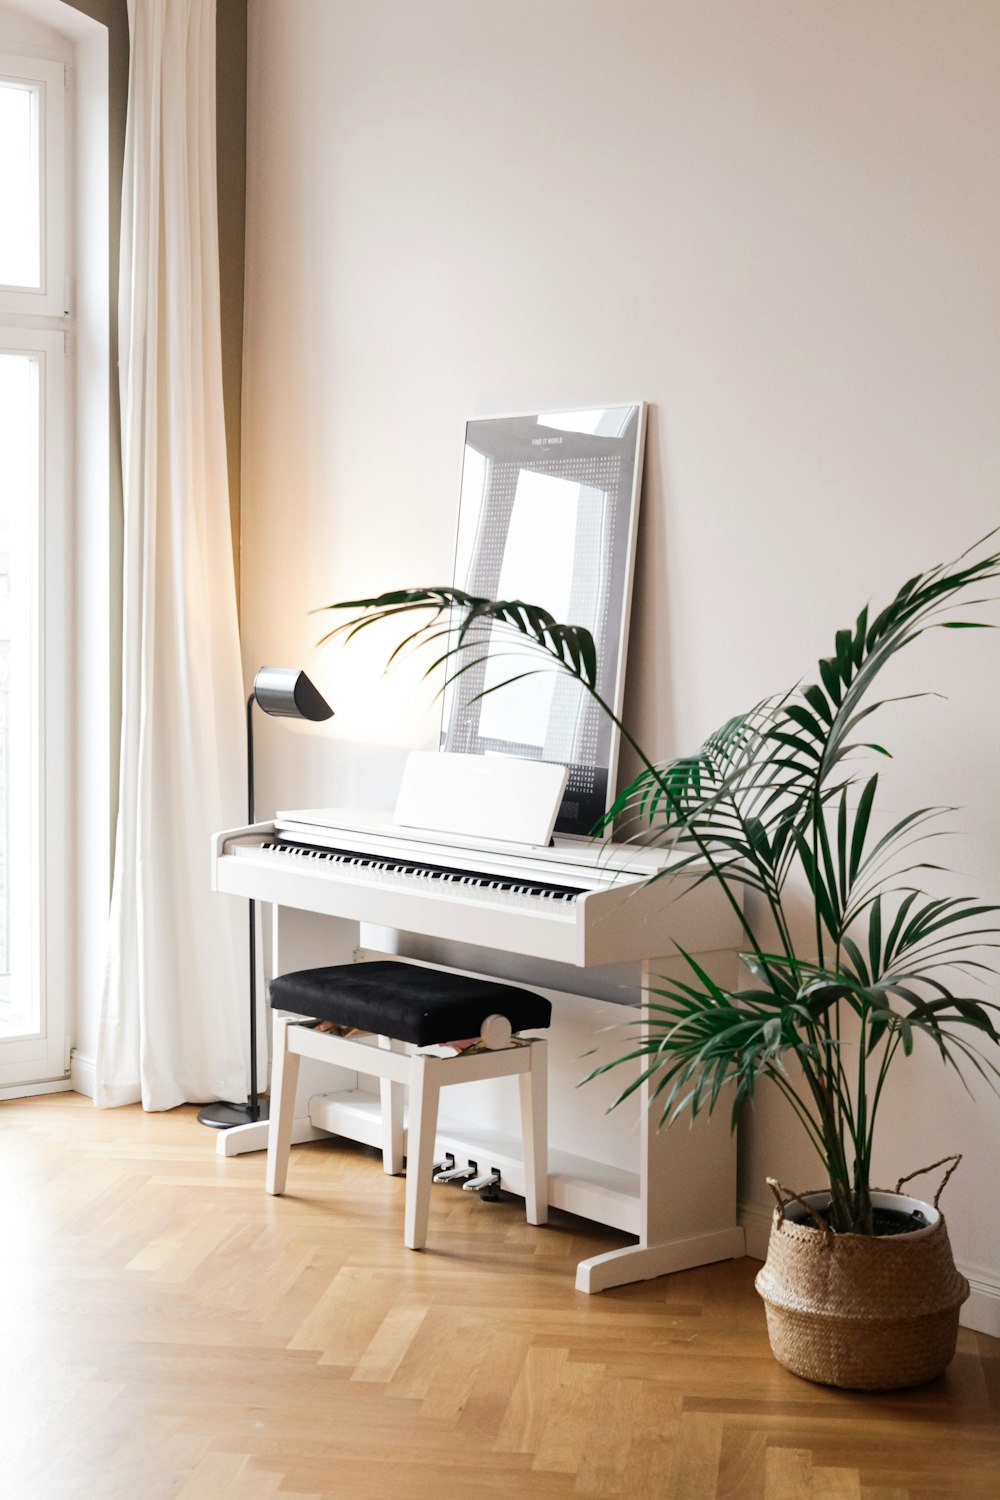 Schwarz-Weiß-Klavier in der Nähe von grüner Zimmerpflanze